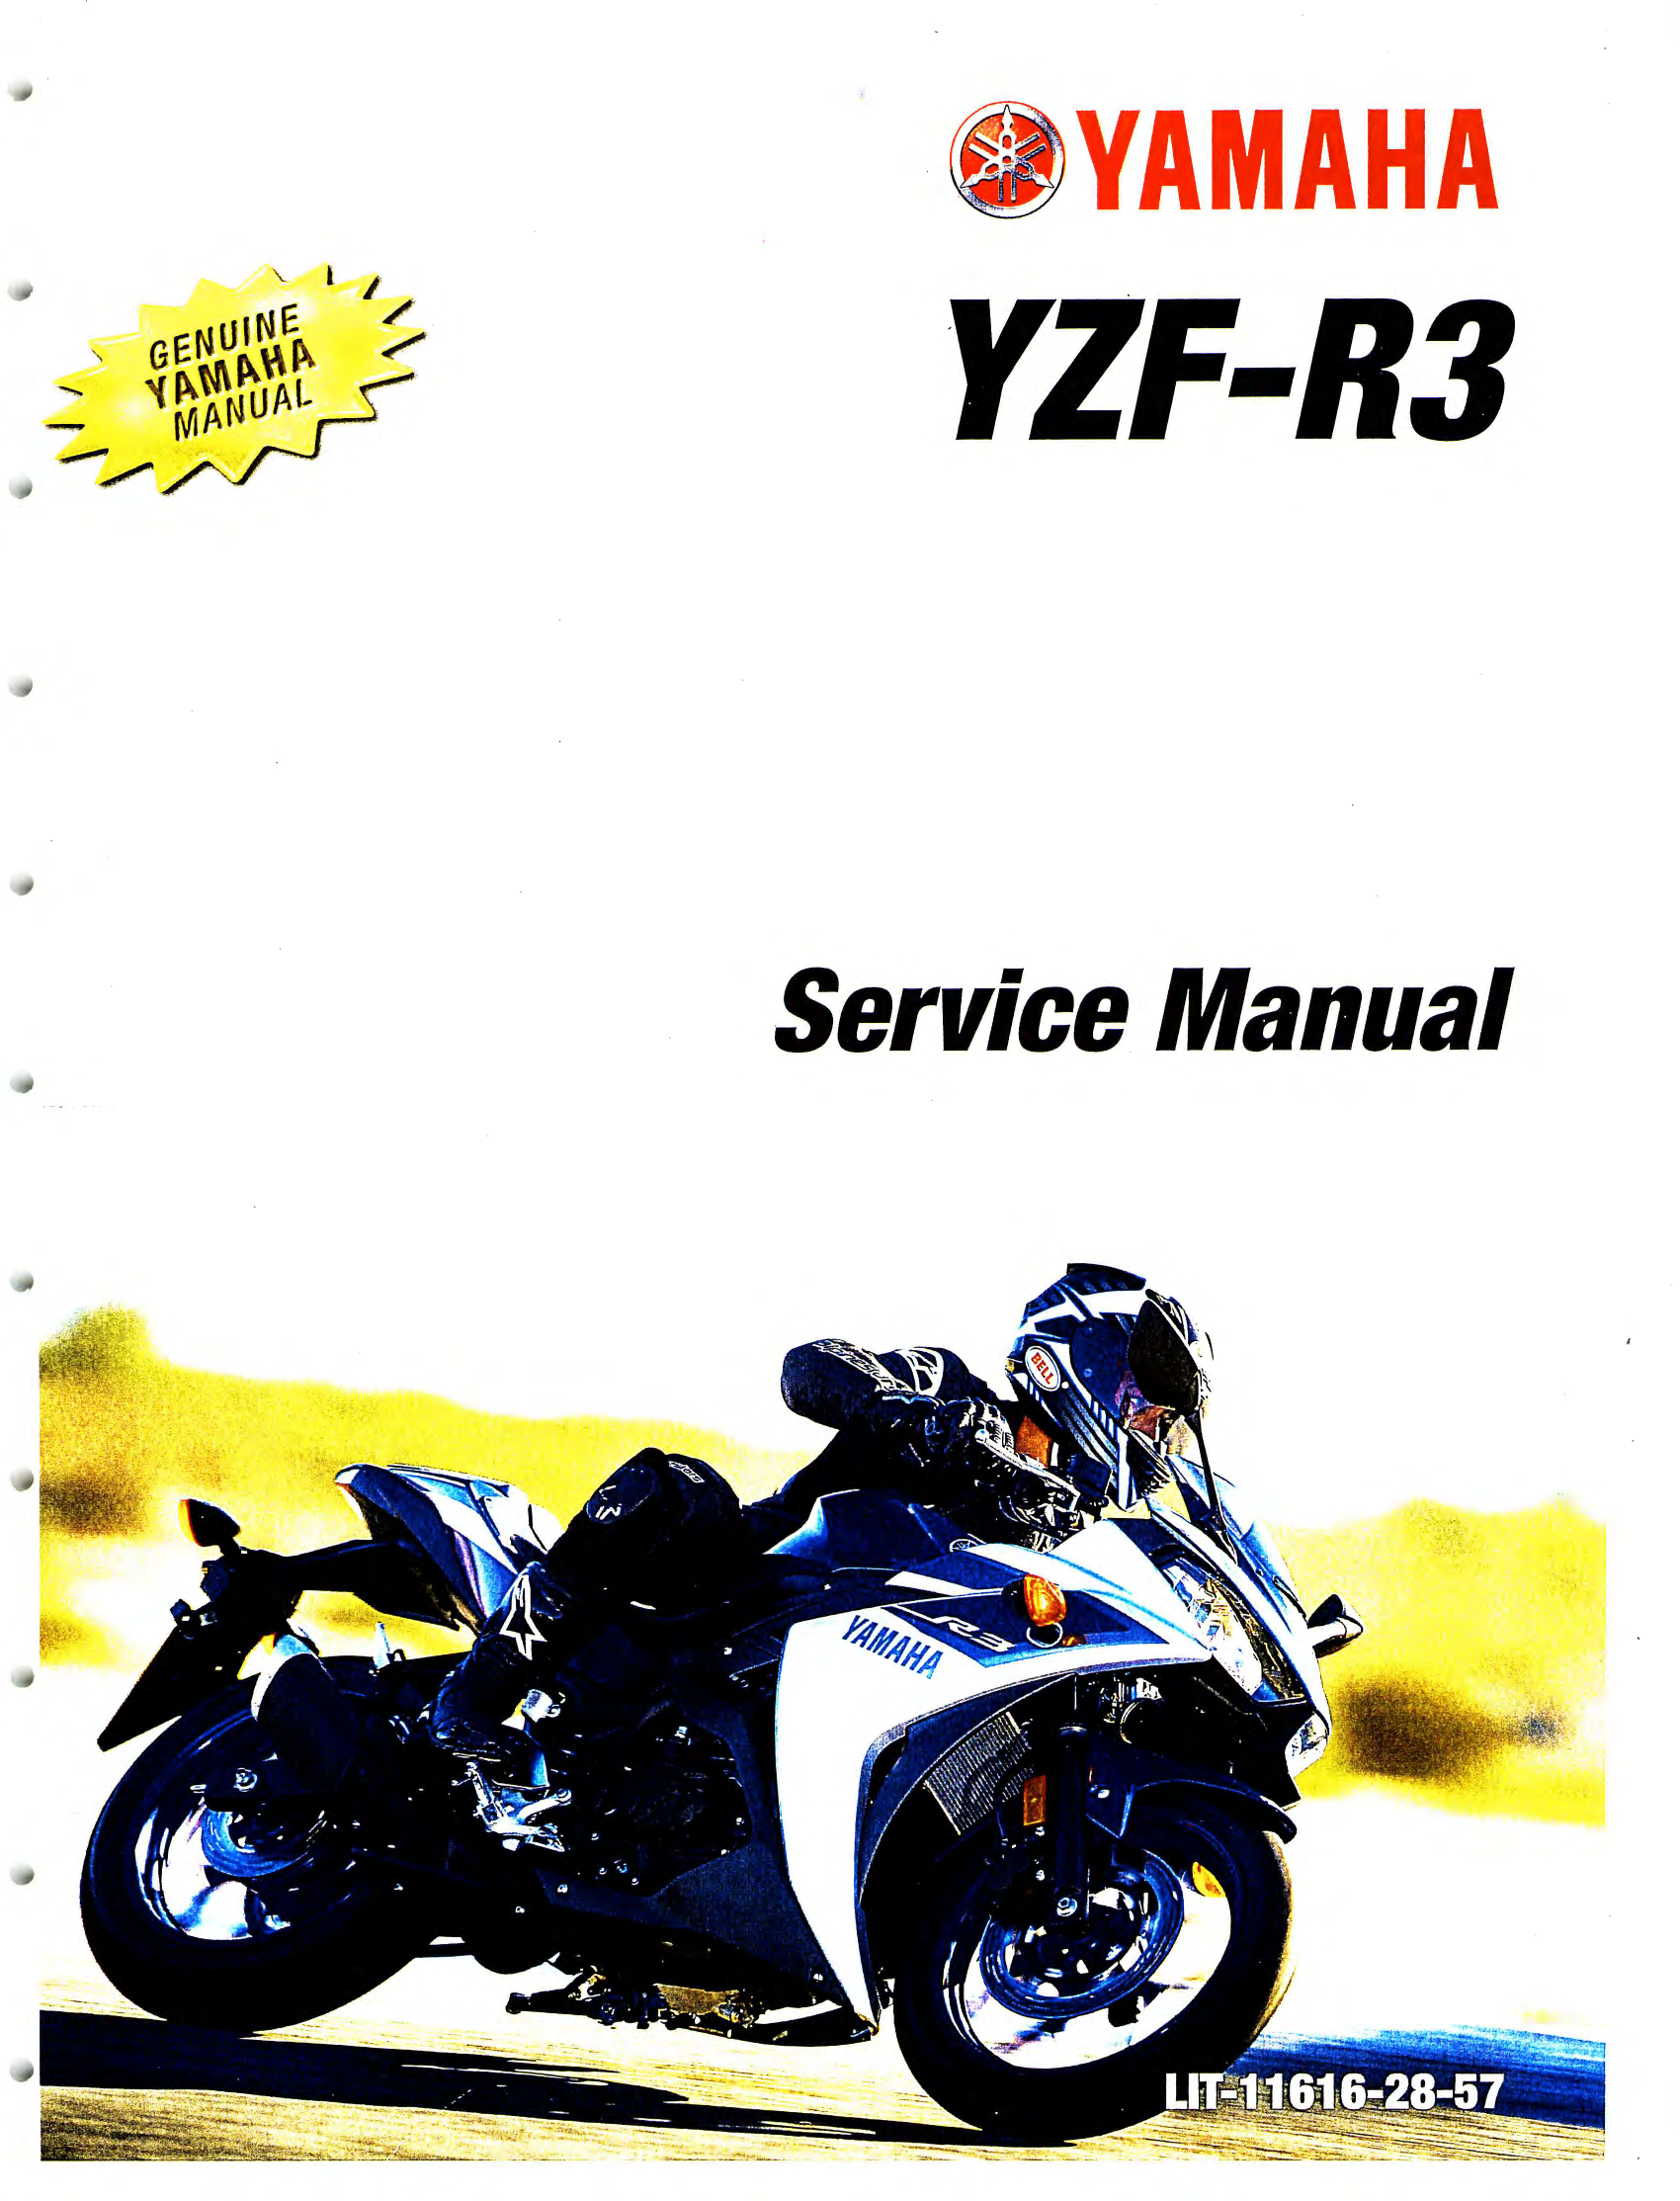 原版英文2015年雅马哈r3维修手册雅马哈yzfr3 yamaha yzf-r3维修手册扫描版pdf插图